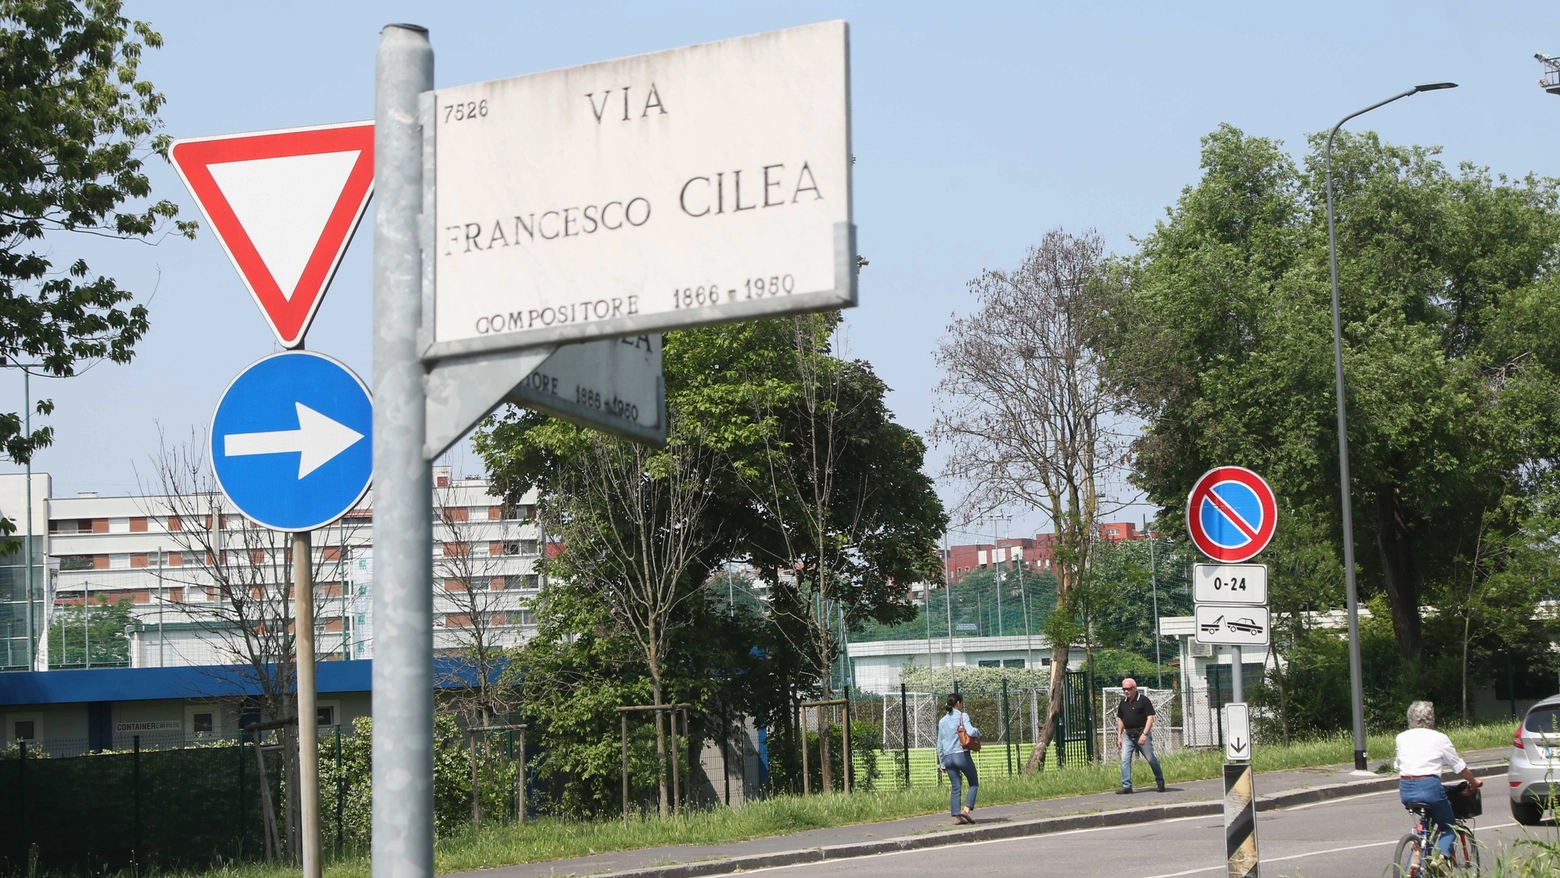 Aggressione in via Cliea a Milano, vicino al Parco Trenno